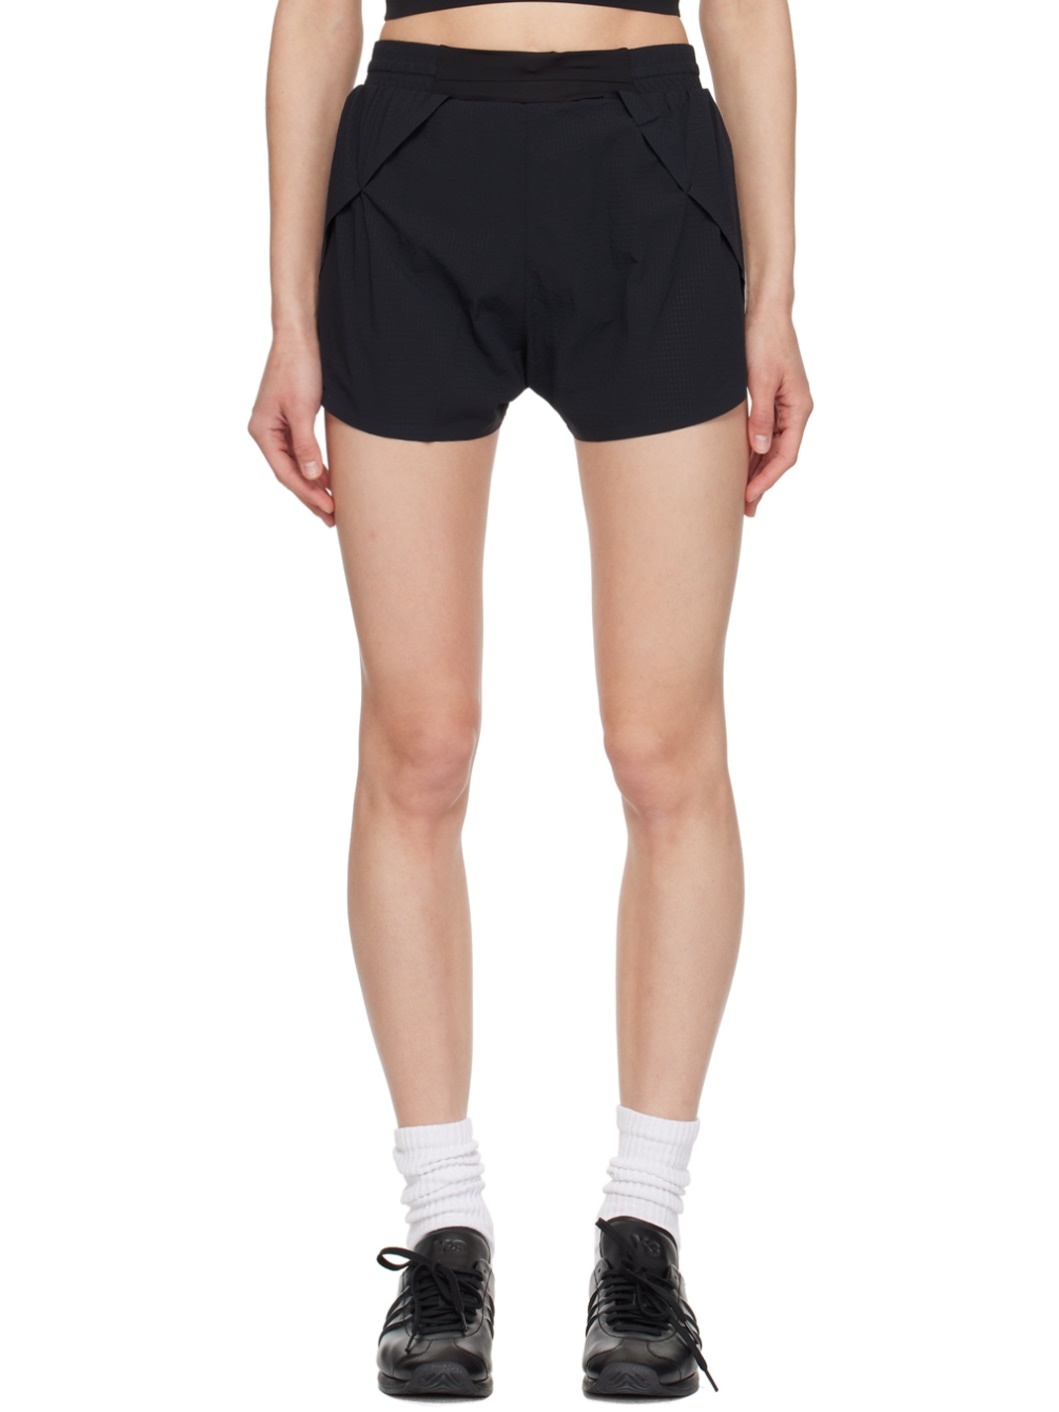 Black Running Shorts - 1